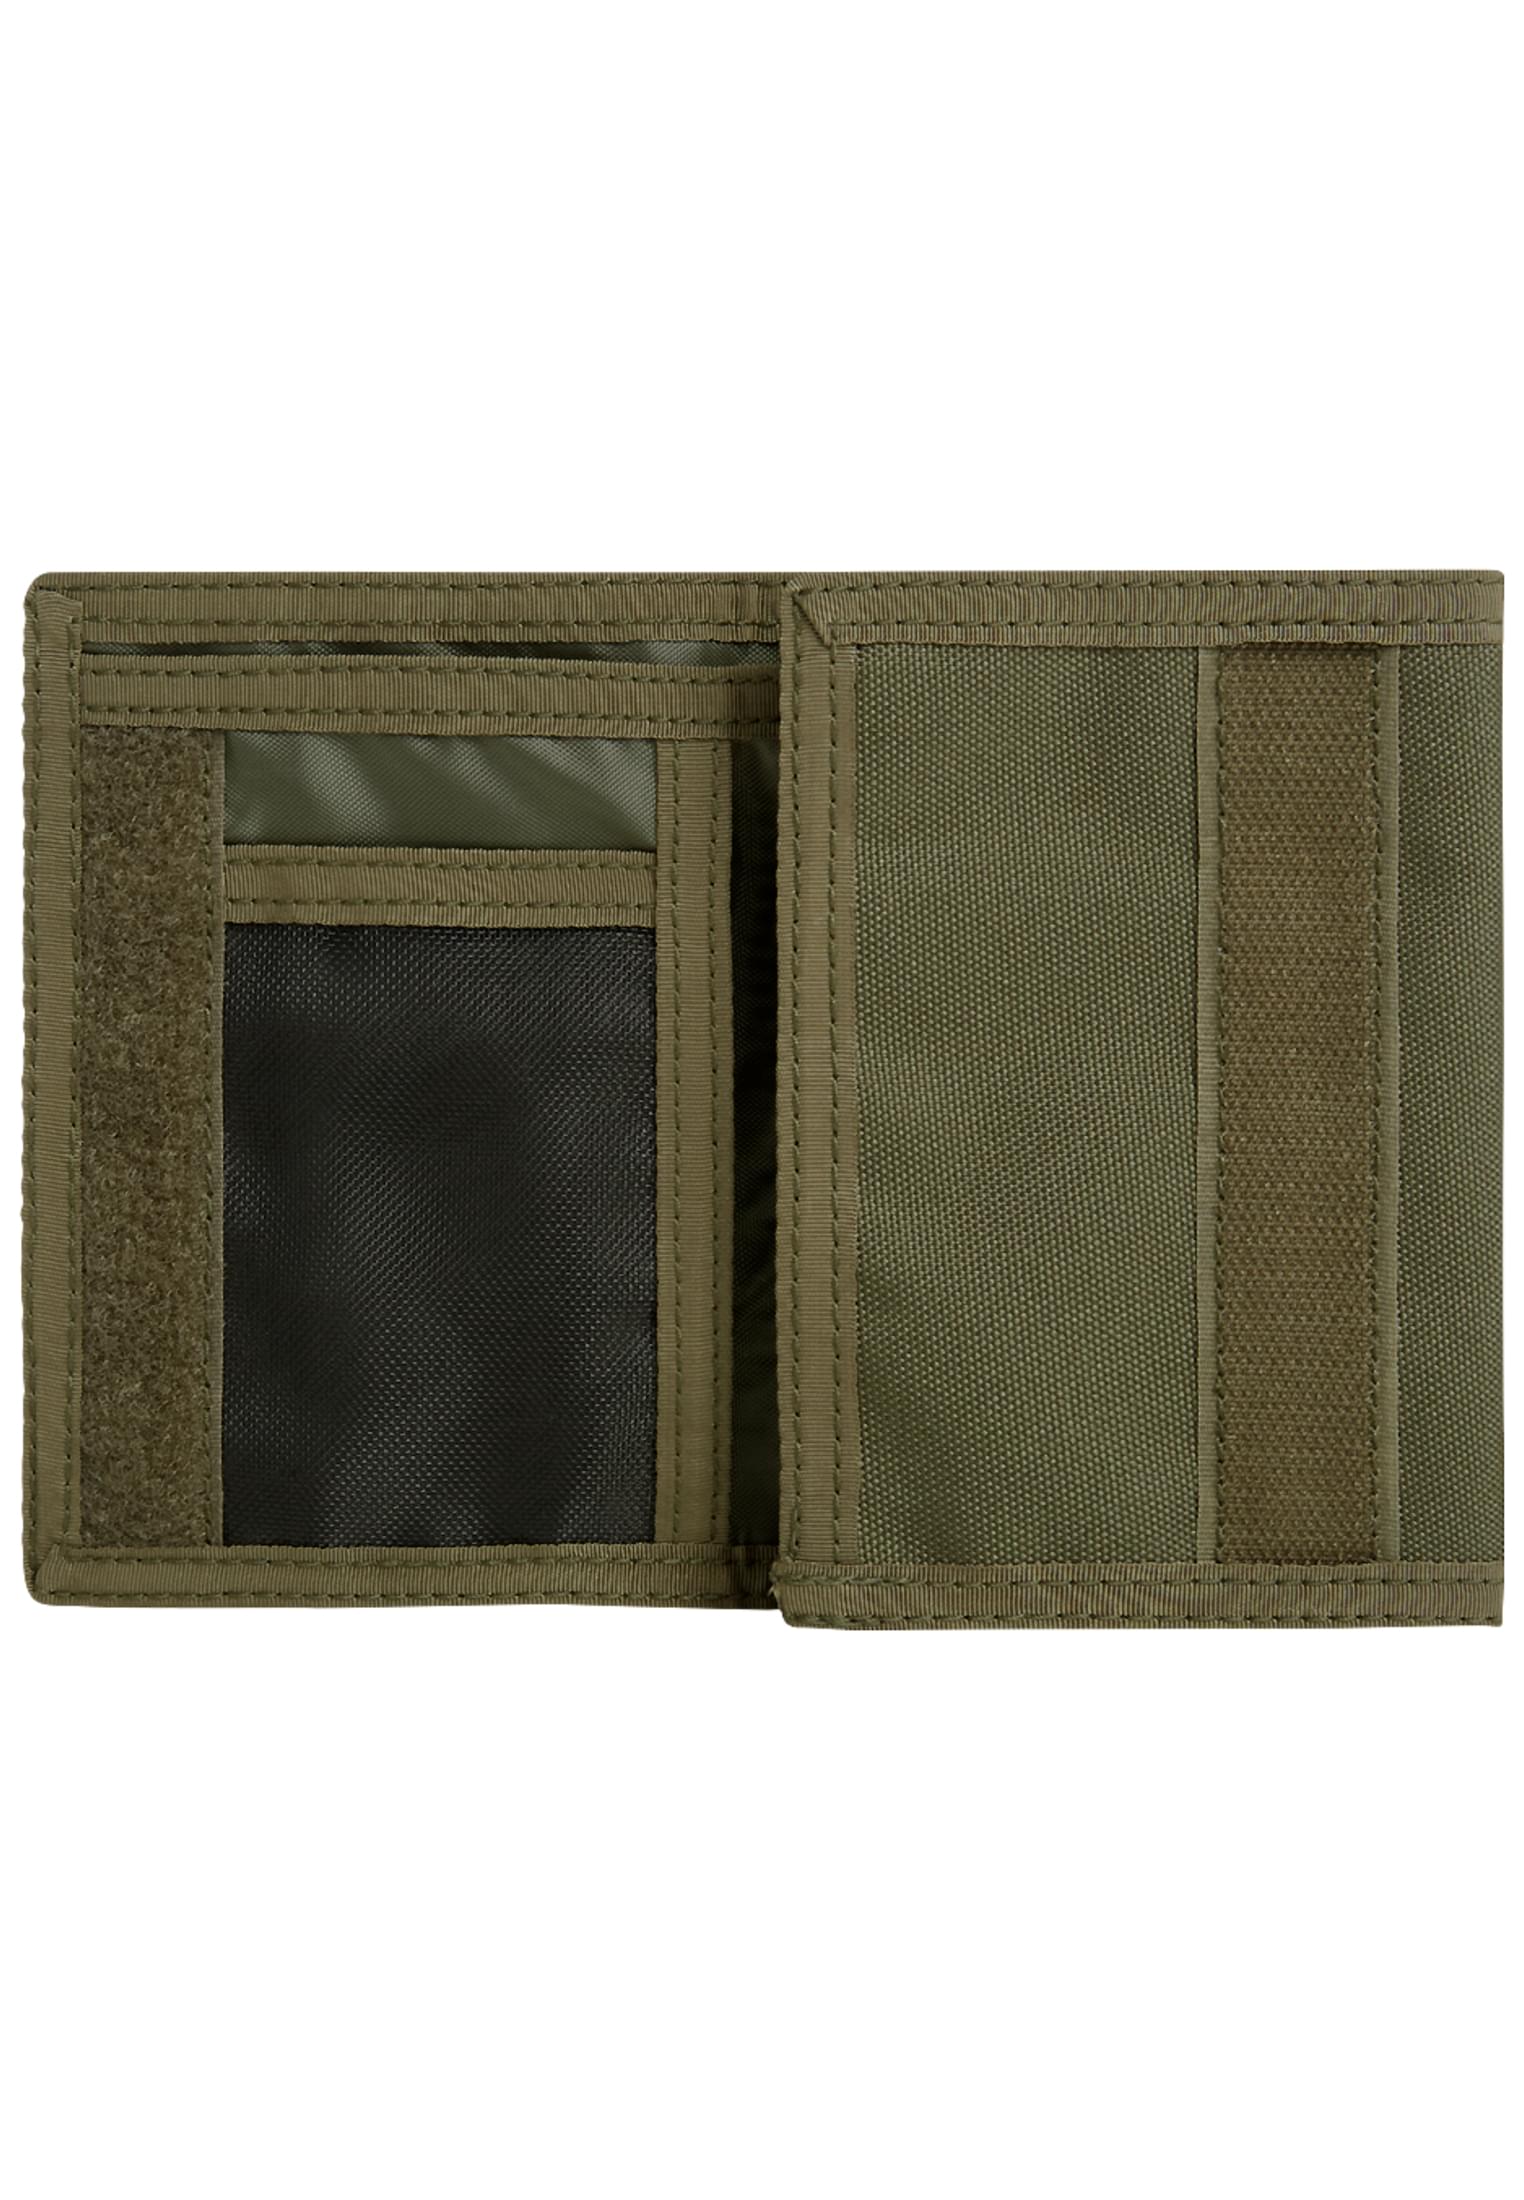 Taschen Wallet Three in Farbe olive